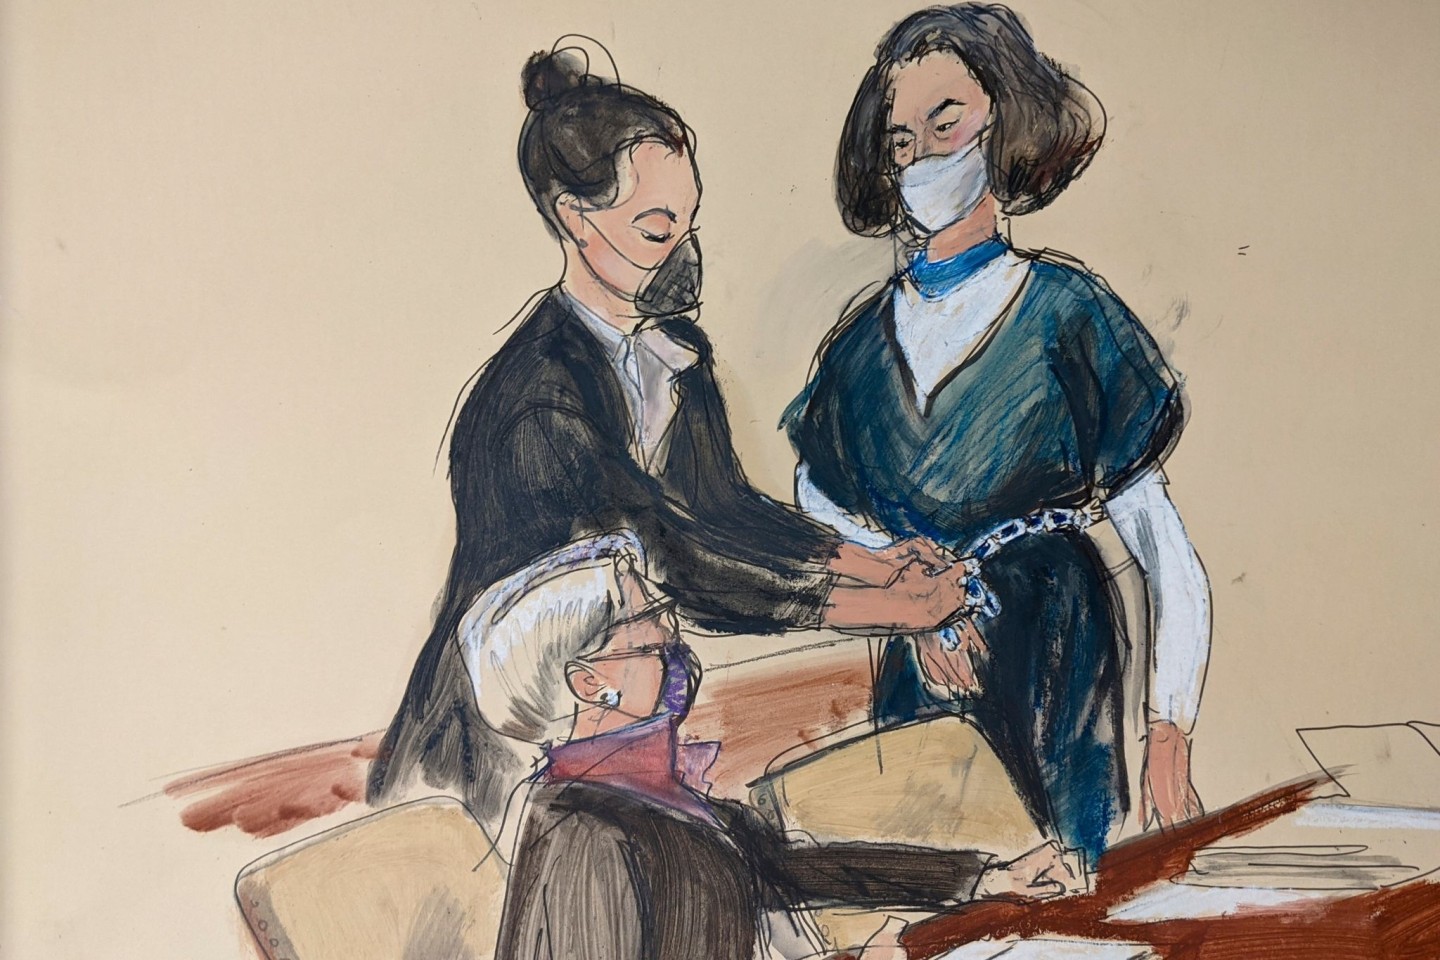 Auf dieser Gerichtsskizze steht Ghislaine Maxwell vor ihrer Anwältin Bobbi Sternheim, während eine Gerichtsangestellte ihr vor einer Anhörung die Fesseln abnimmt.